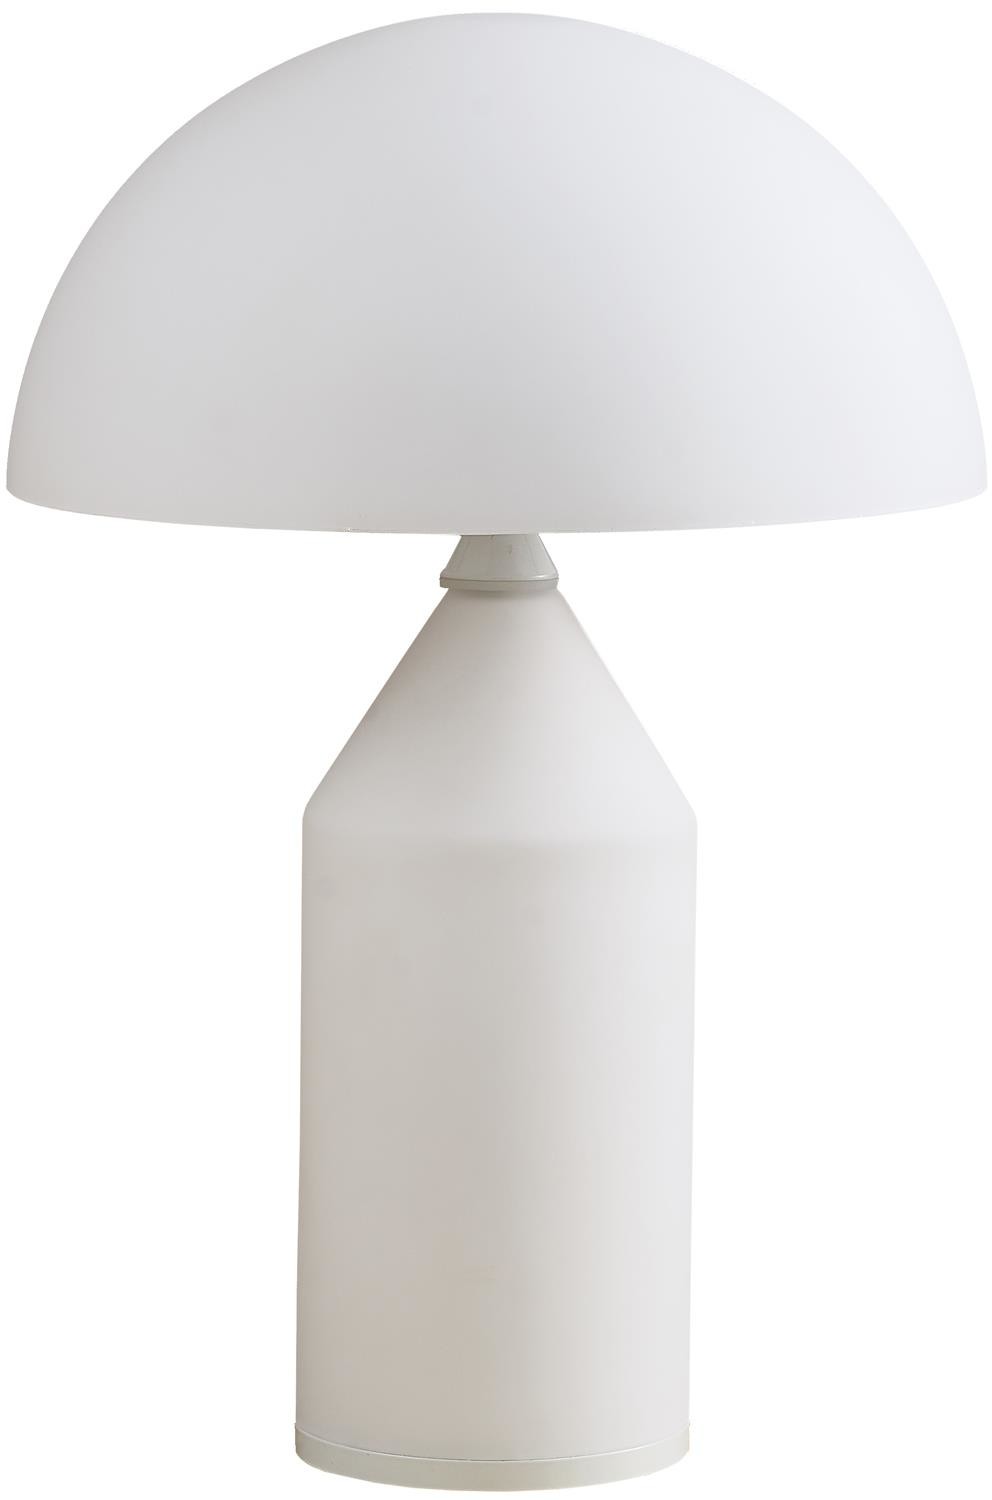 KKS Biała lampa stołowa BELFUGO MT1234-250 szklany grzybek do gabinetu